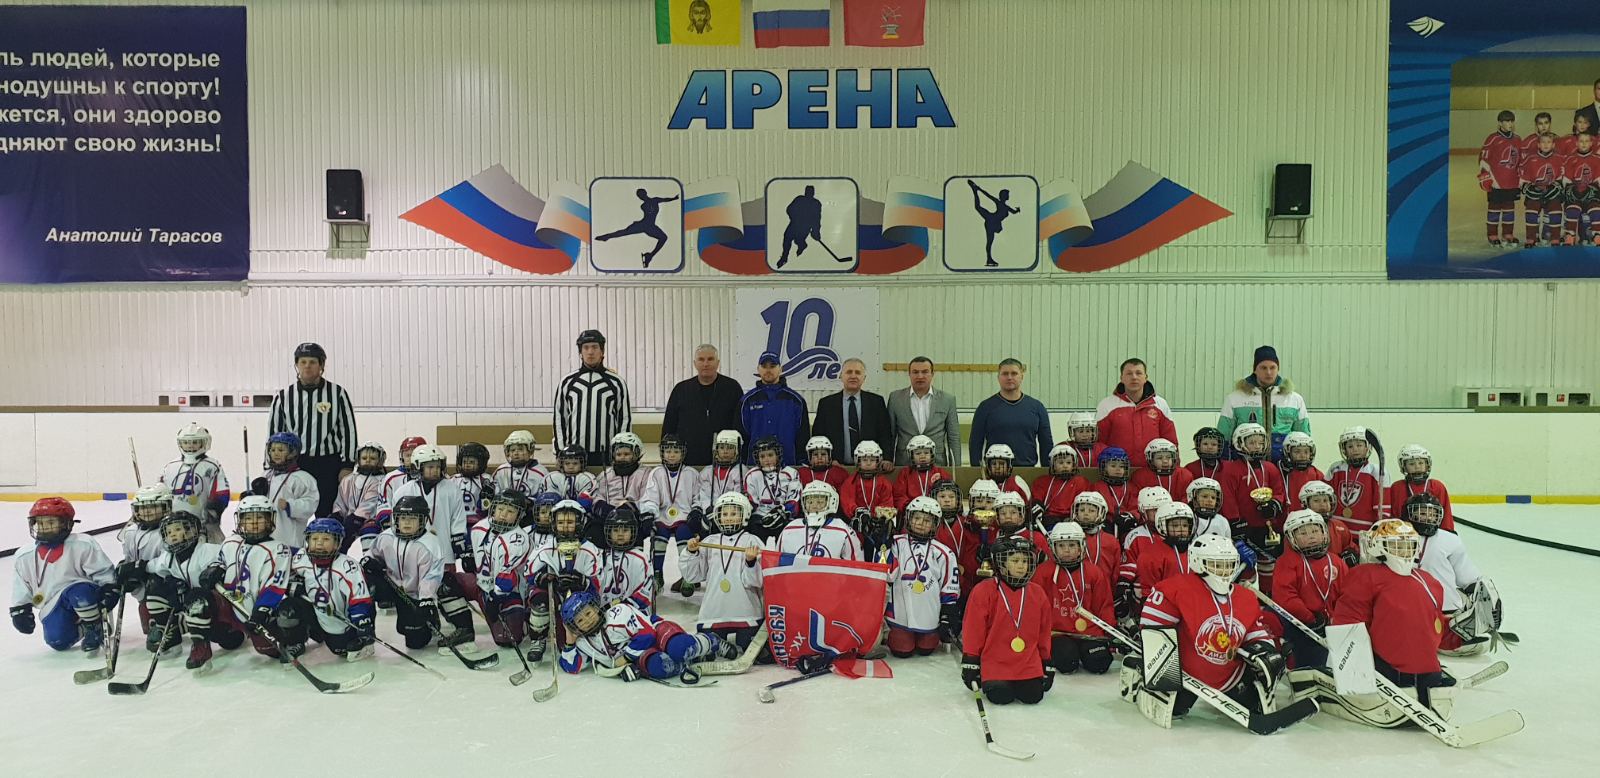 В Кузнецке прошел Межрегиональный турнир по хоккею с шайбой среди детских команд